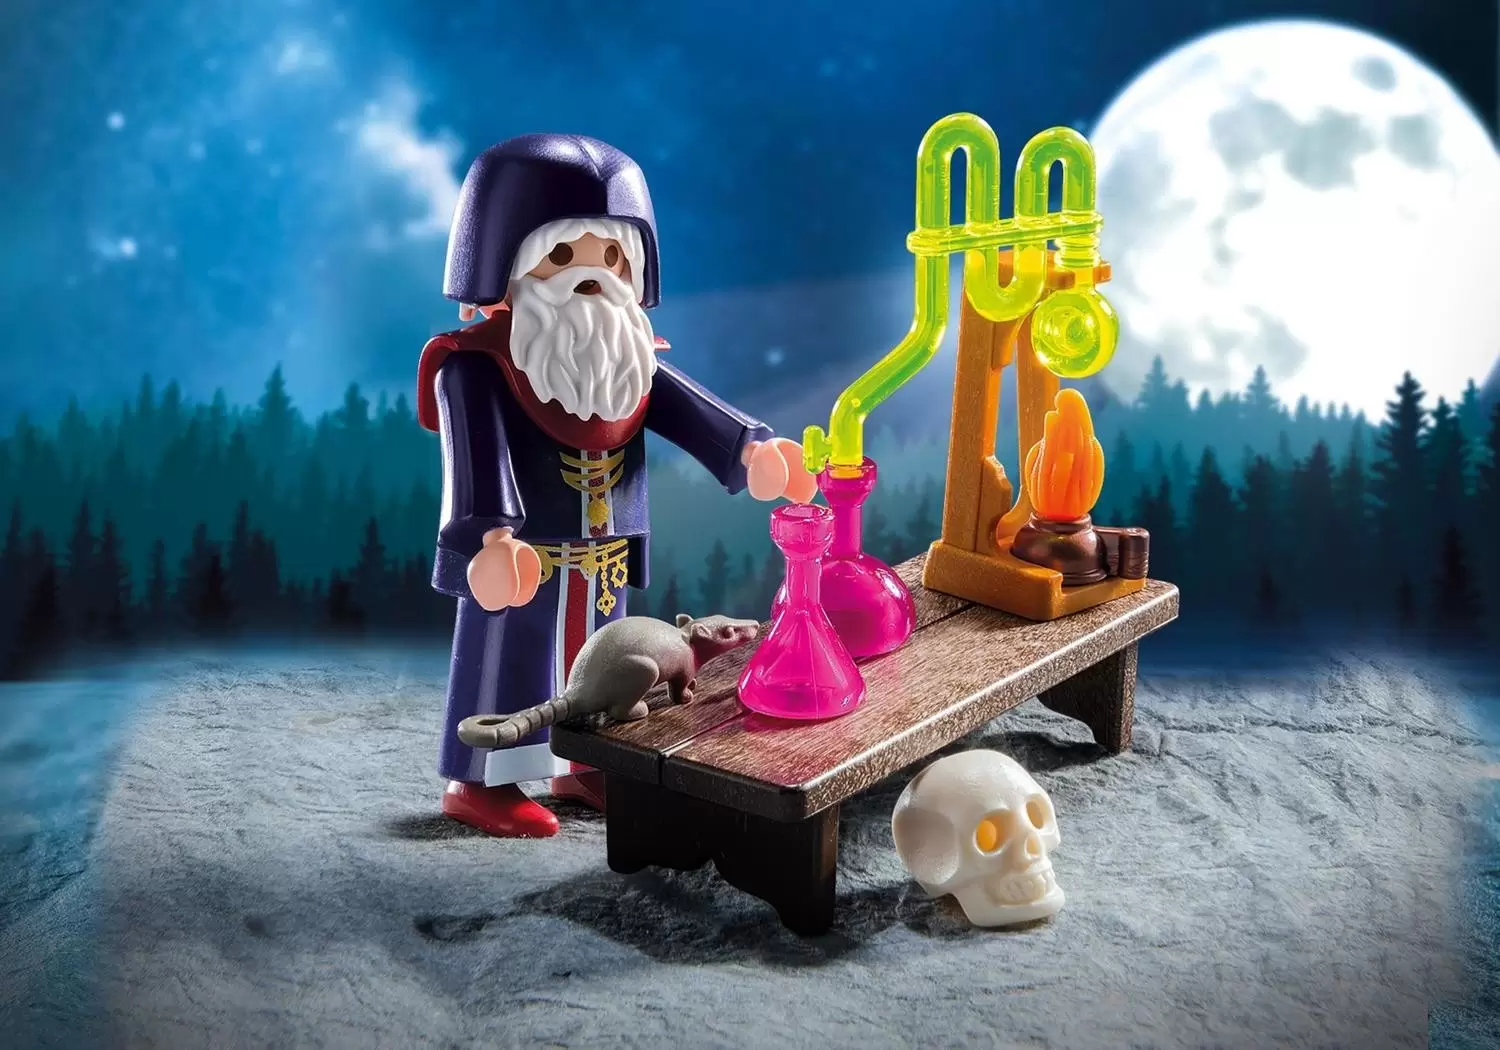 Playmobil SpecialPlus - Alchemist with Potions